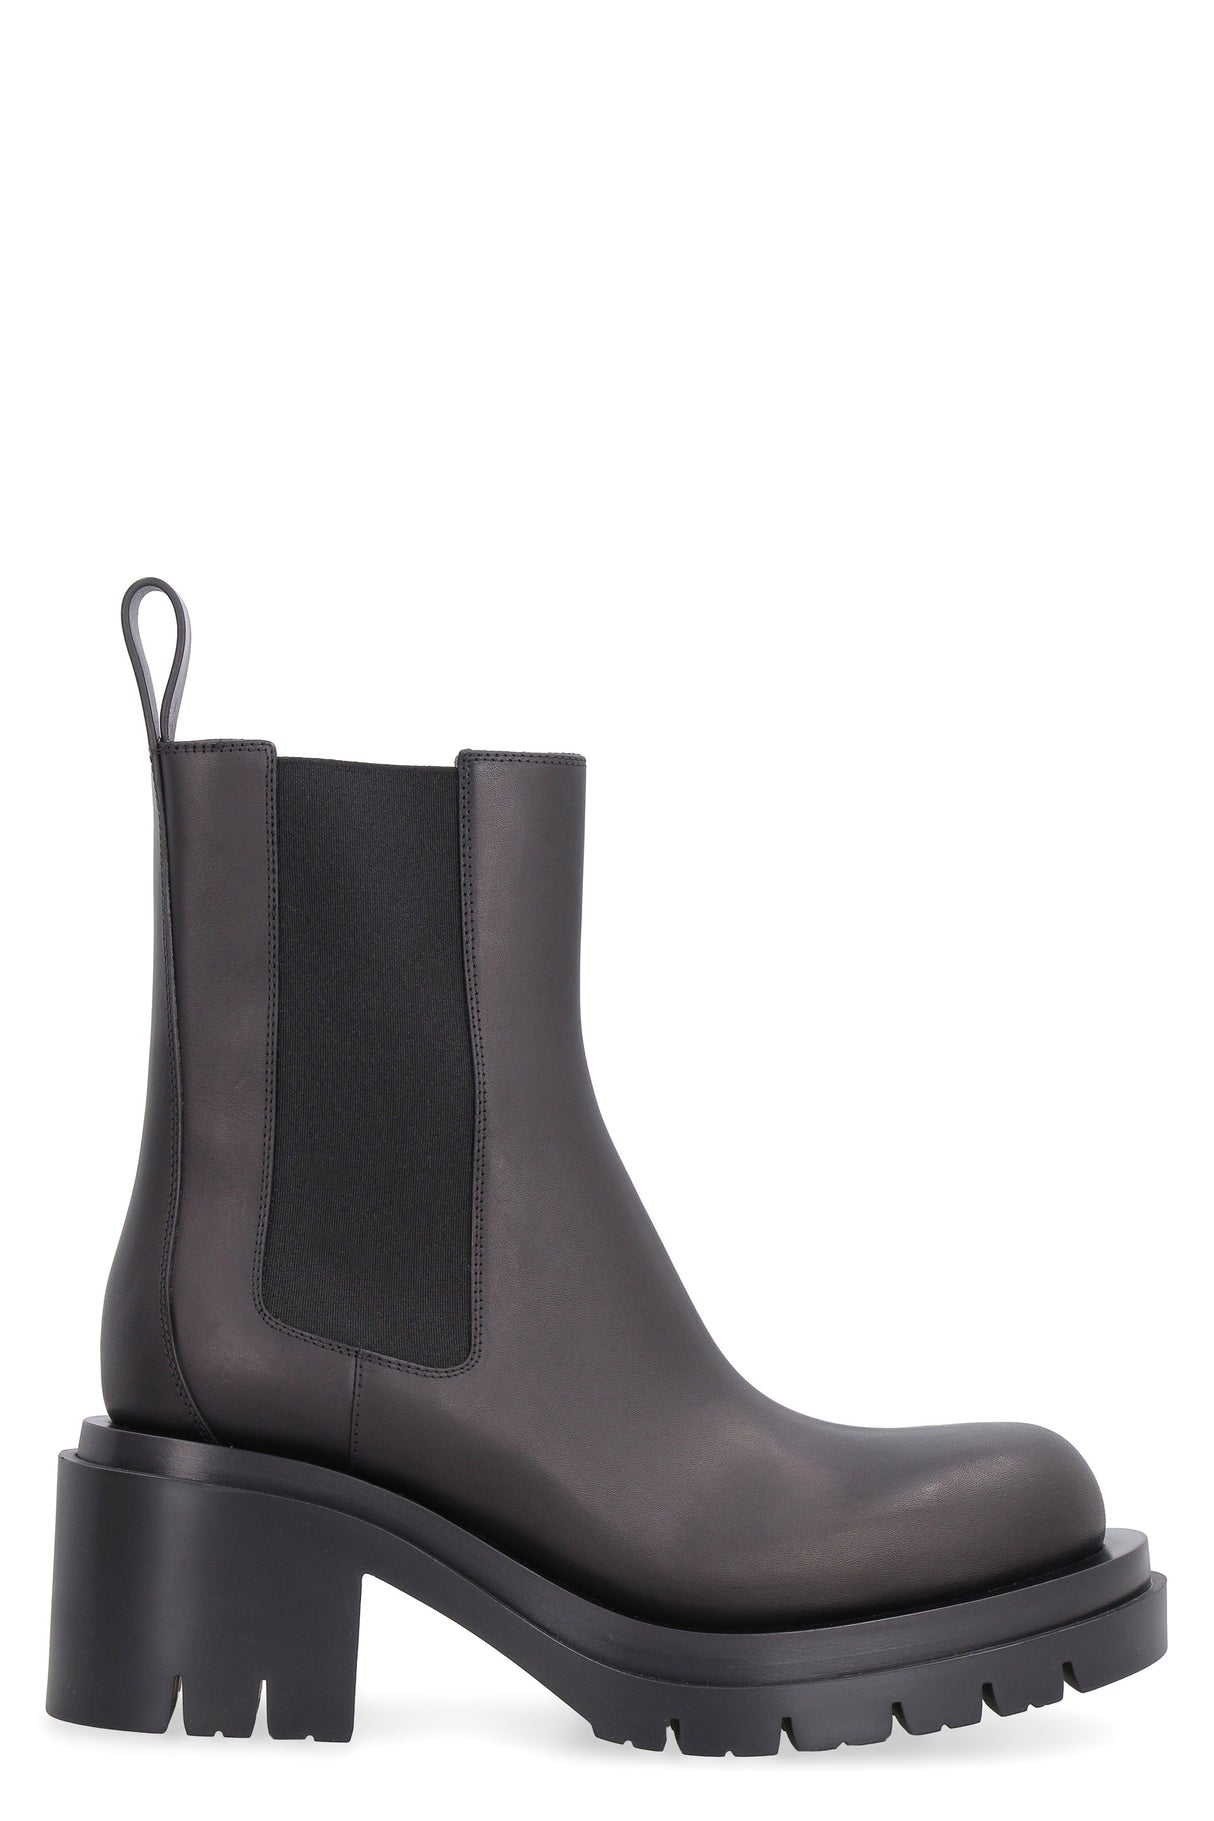 Dép Leather Boot đen cho nữ - Bộ sưu tập Thu Đông 2021